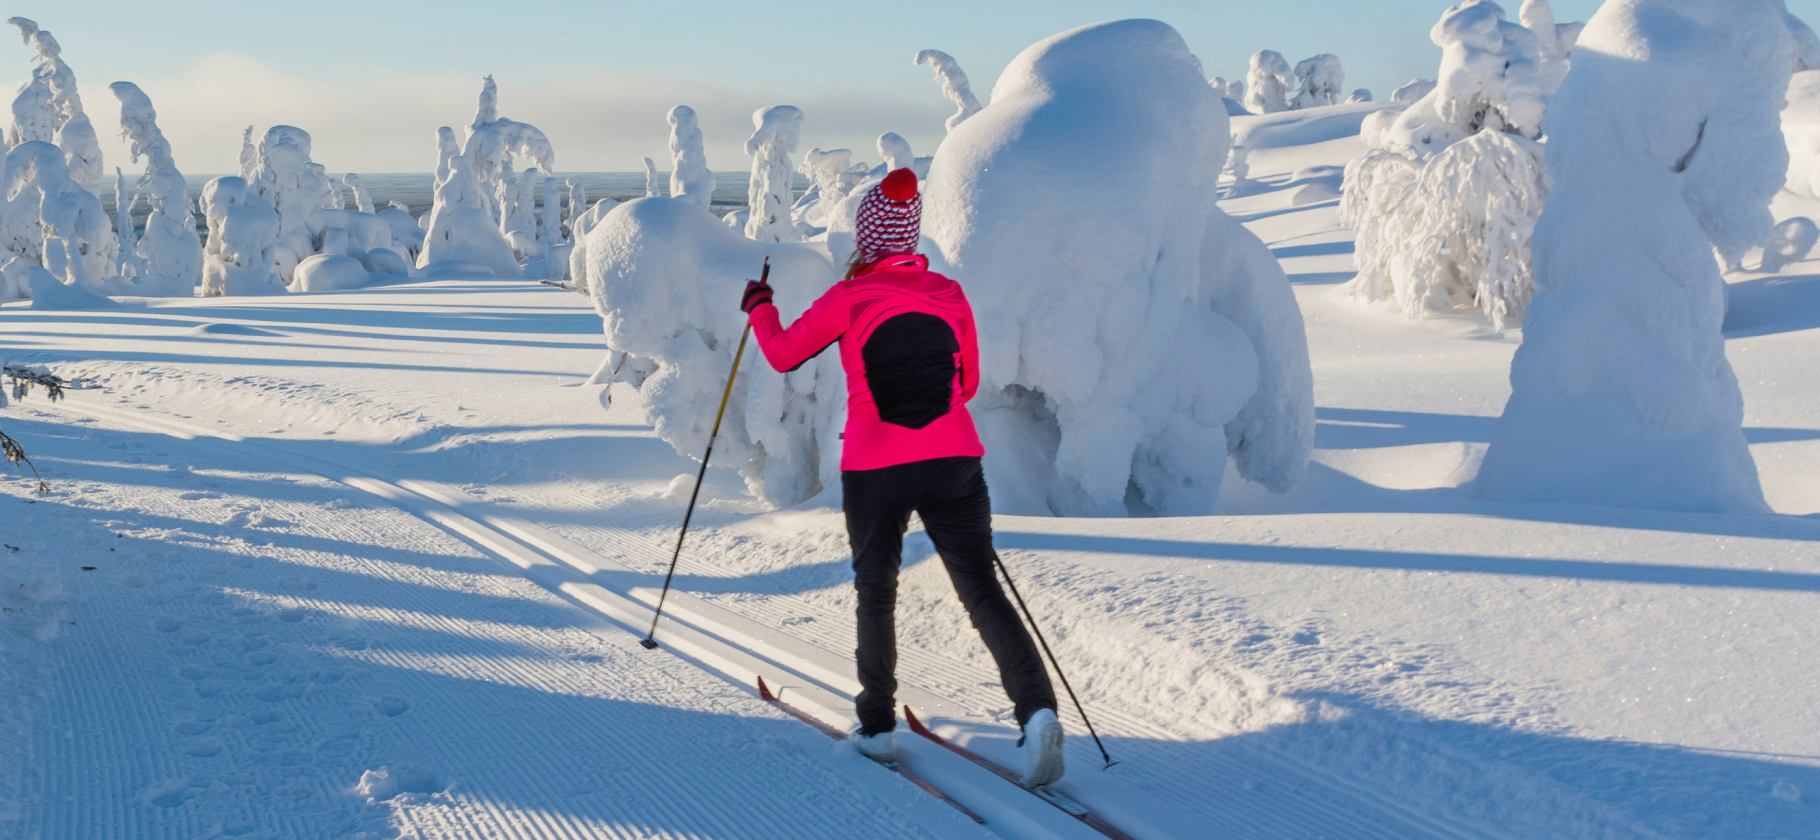 «Красота и безлюдность»: 5 причин полюбить беговые лыжи